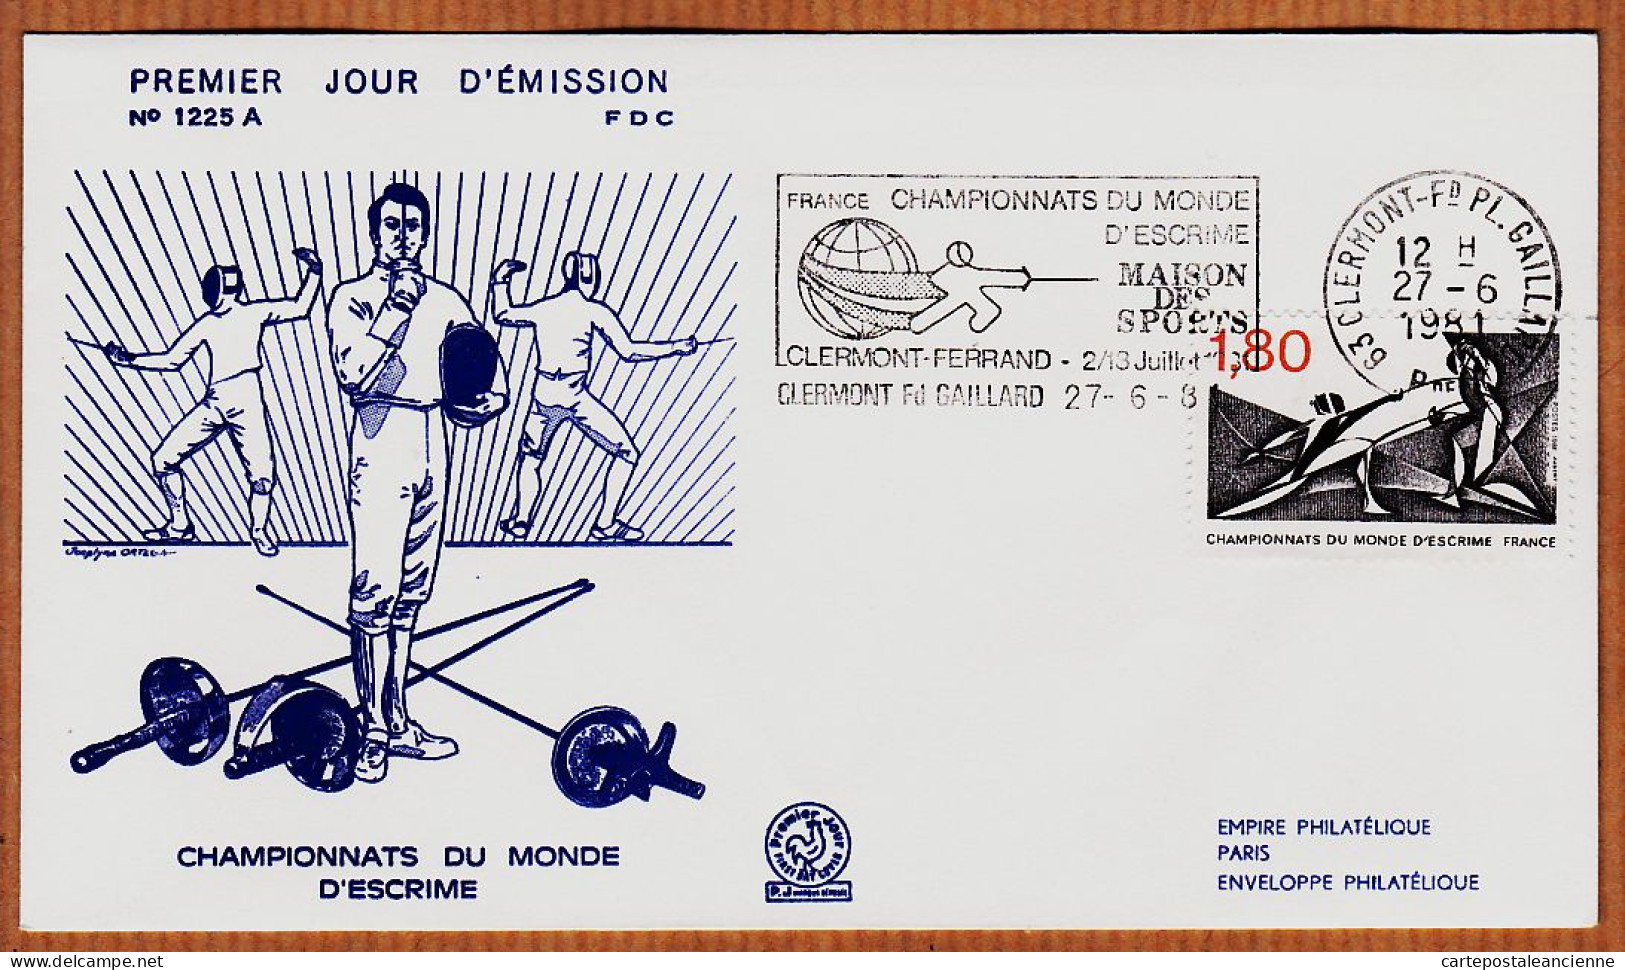 04765 / FDC CHAMPIONNATS Du MONDE D' ESCRIME 27 Juin 1981 Flamme CLERMONT-FERRAND Premier Jour Emission 1225 A - Schermen